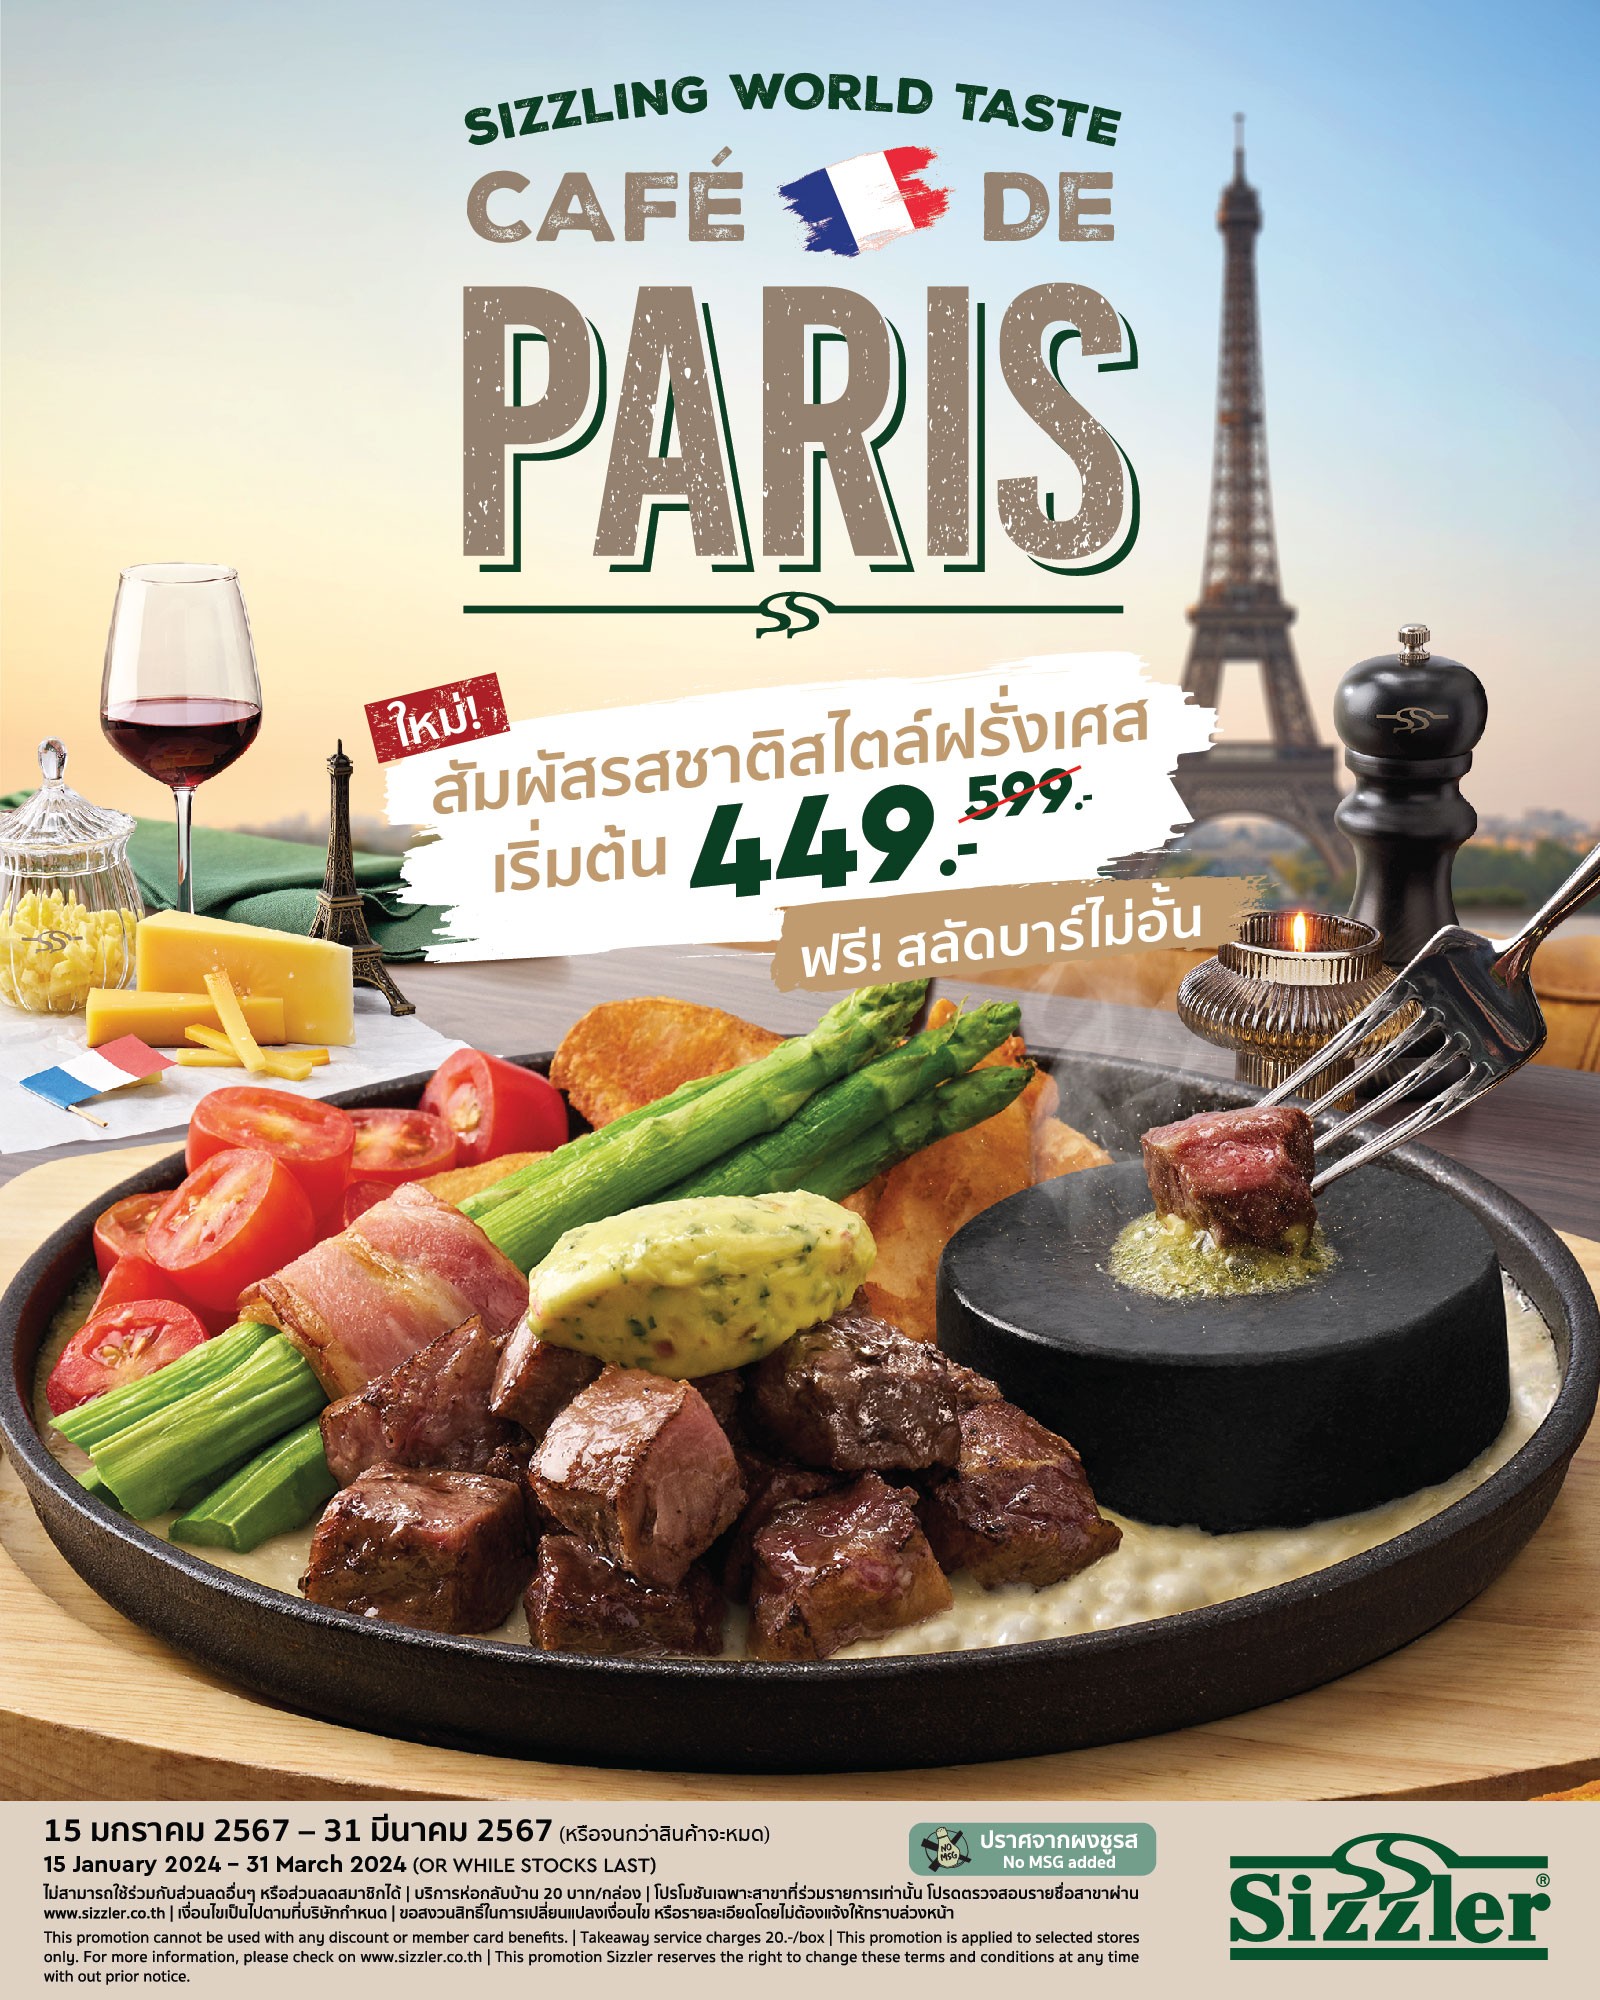 Sizzling World Taste “Cafe De Paris”